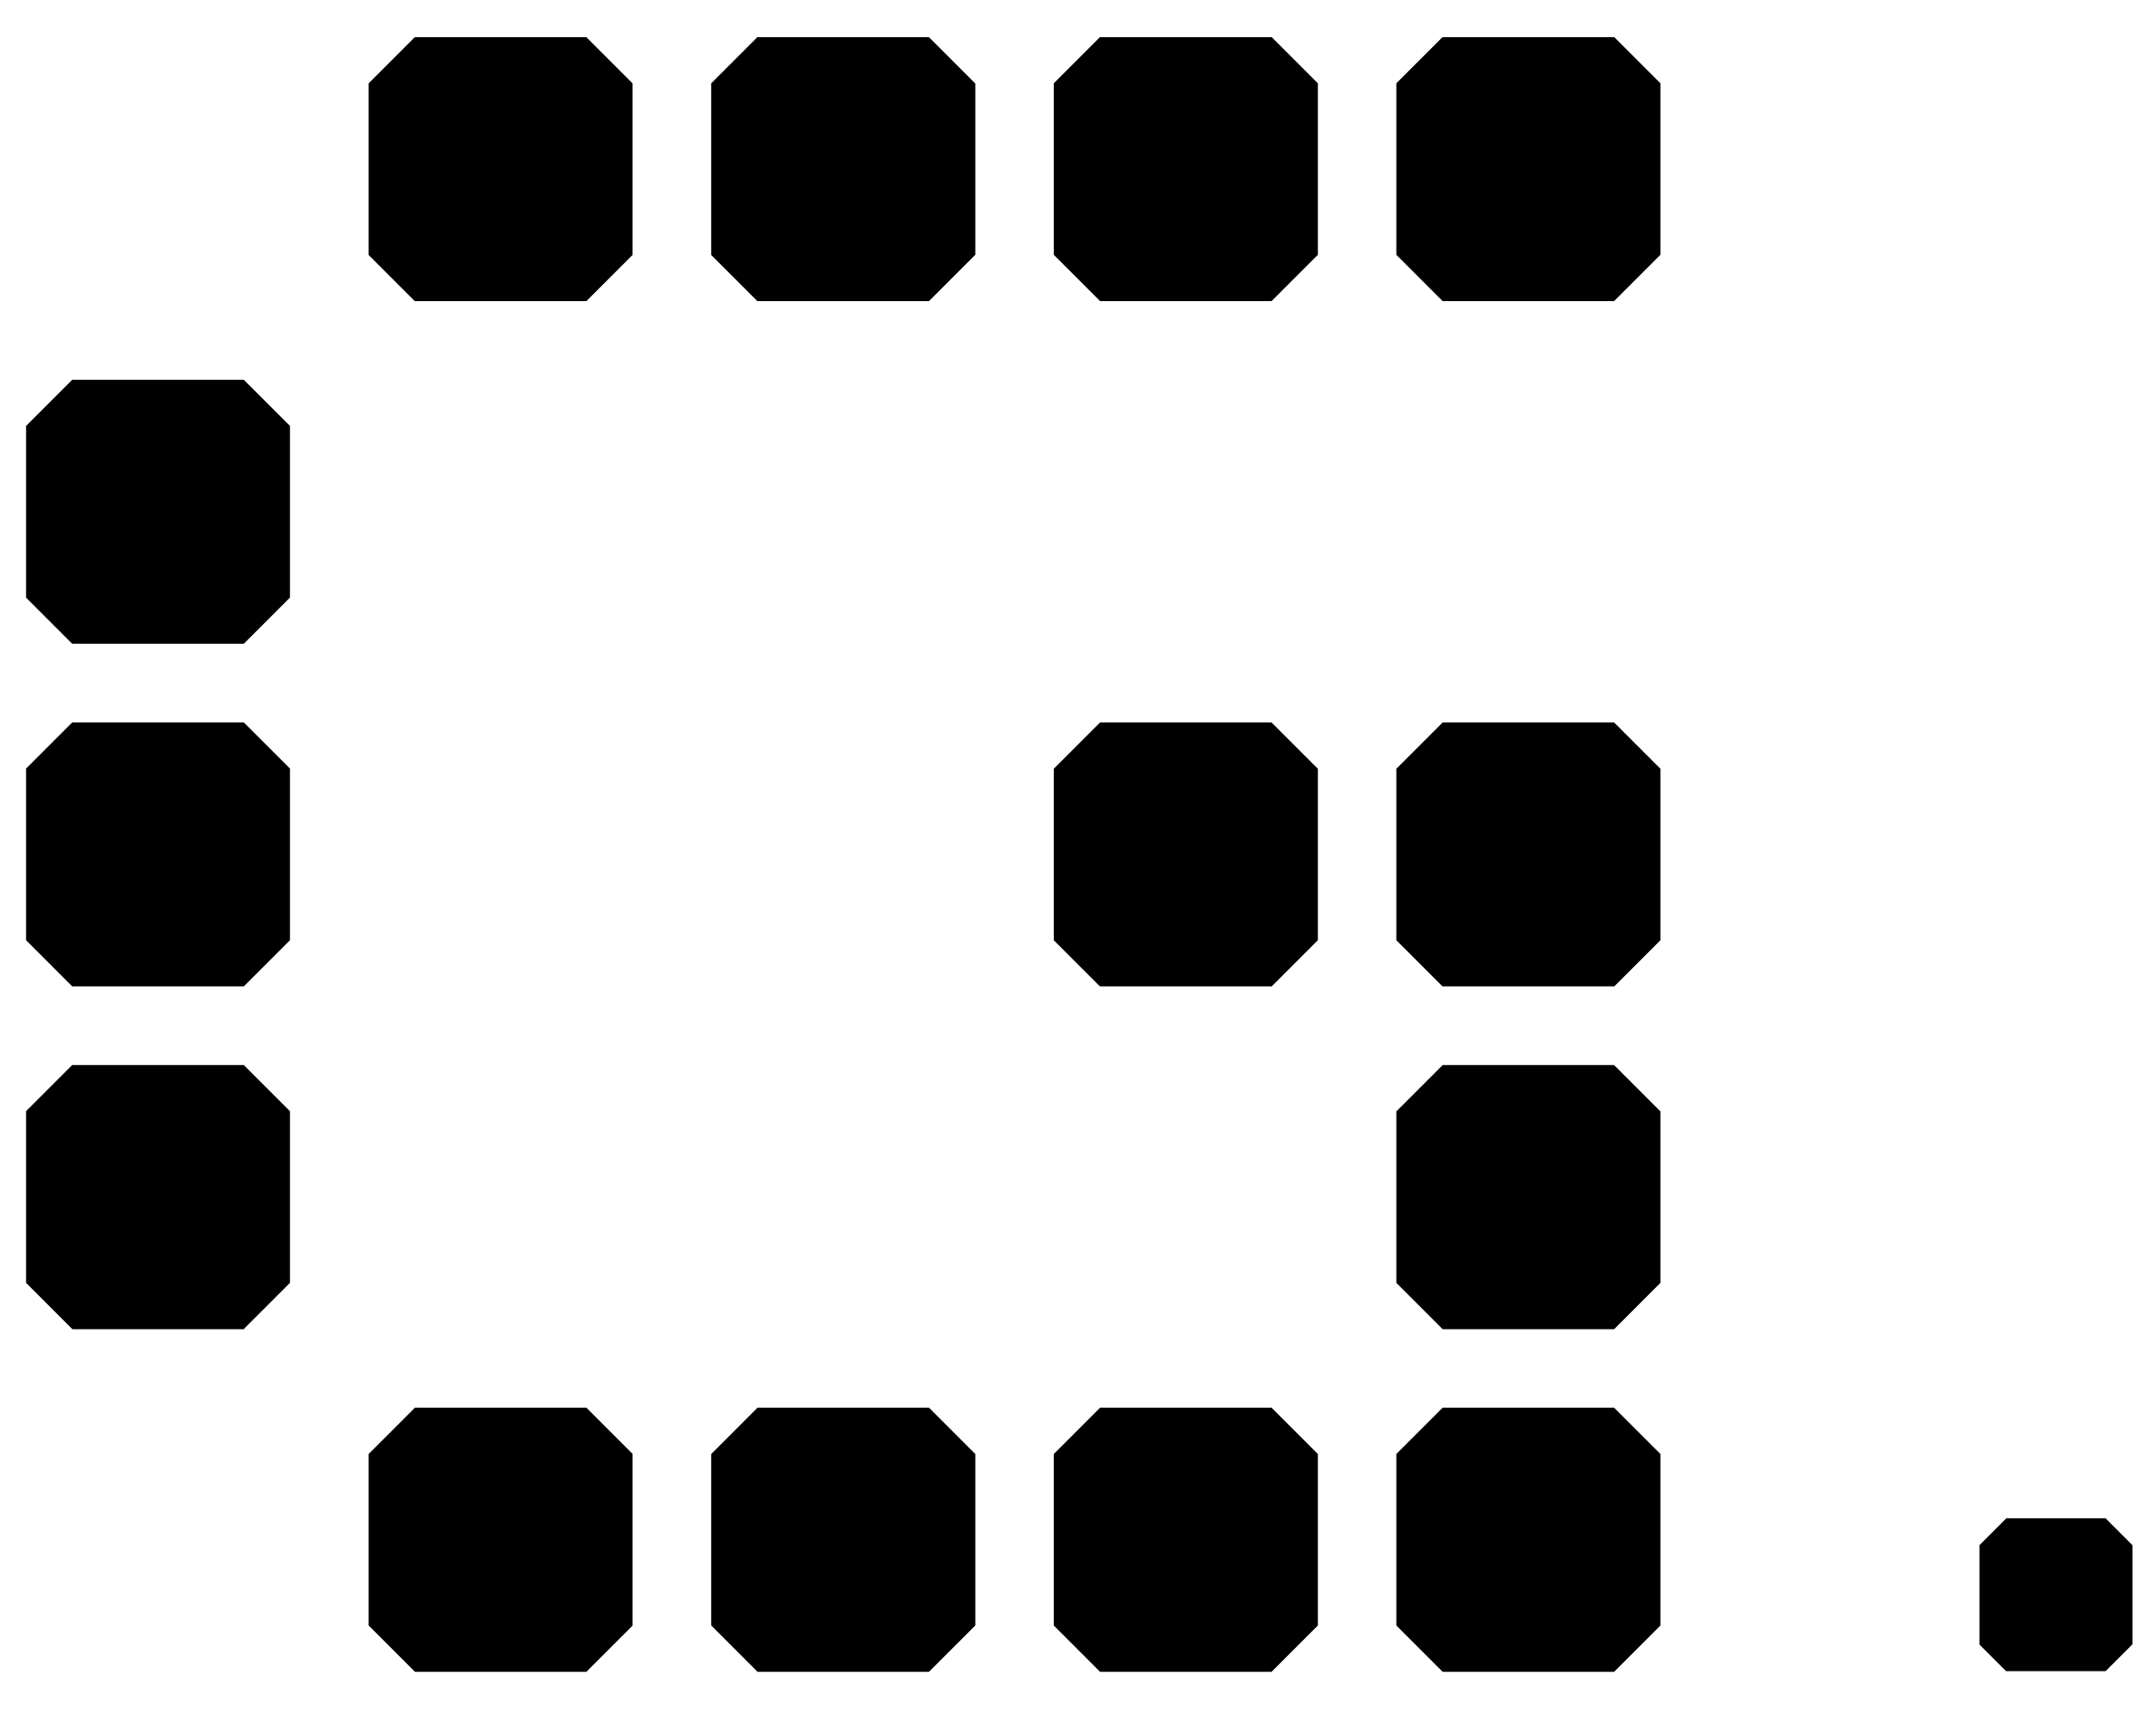 geek cafe logo in black color